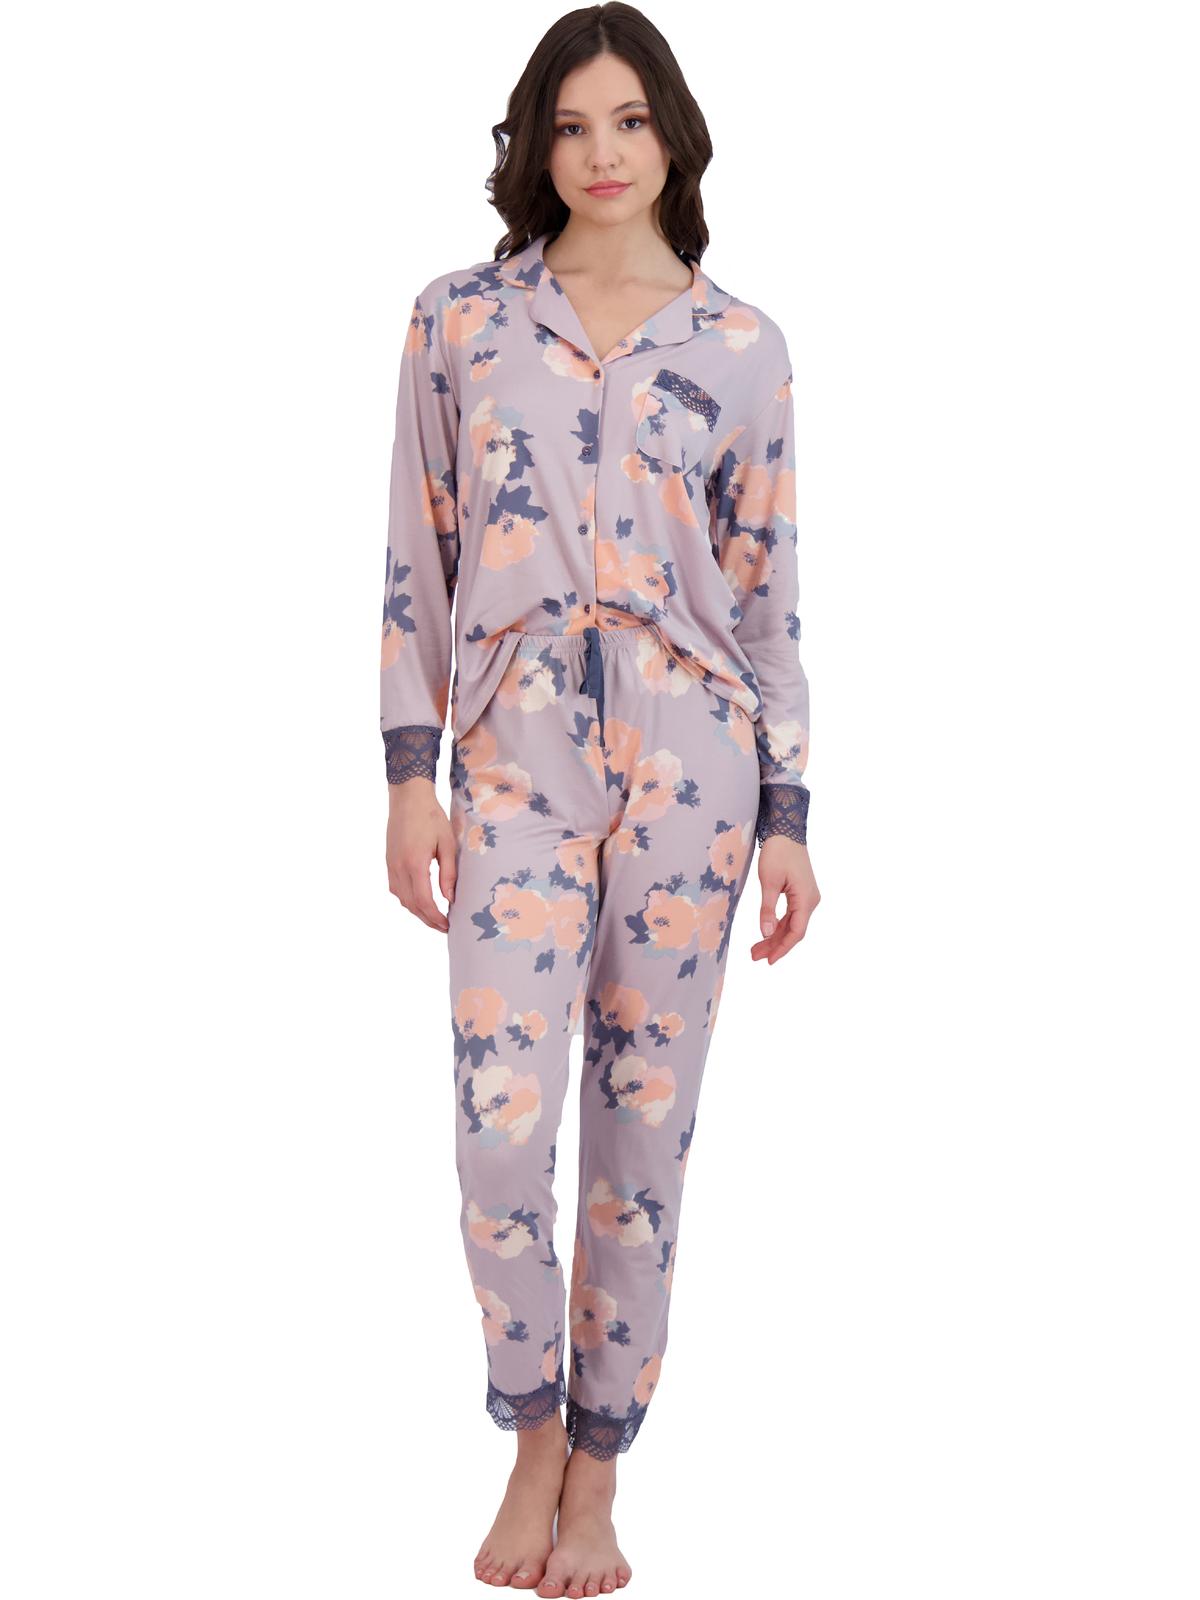 11076円 【日本限定モデル】 Laundry by Shelli Segal ランドリーバイシェルシーガル ファッション ラウンジウェア Womens Gray 2PC Pajama Sets Loungewear XL